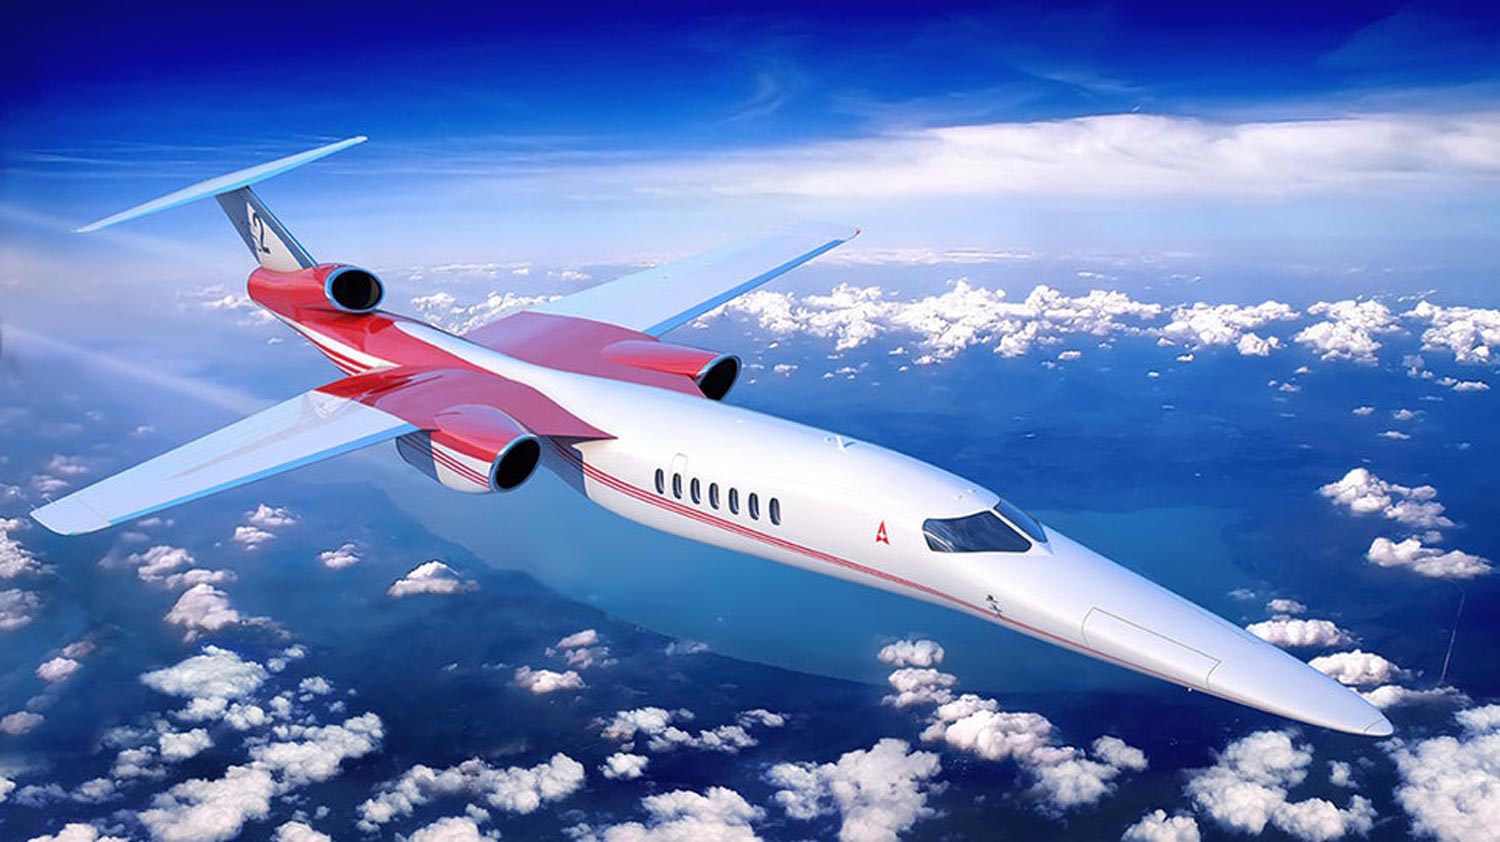 Aerion Gulung Tikar – Impian Pesawat Penumpang Supersonik Moden Berkubur